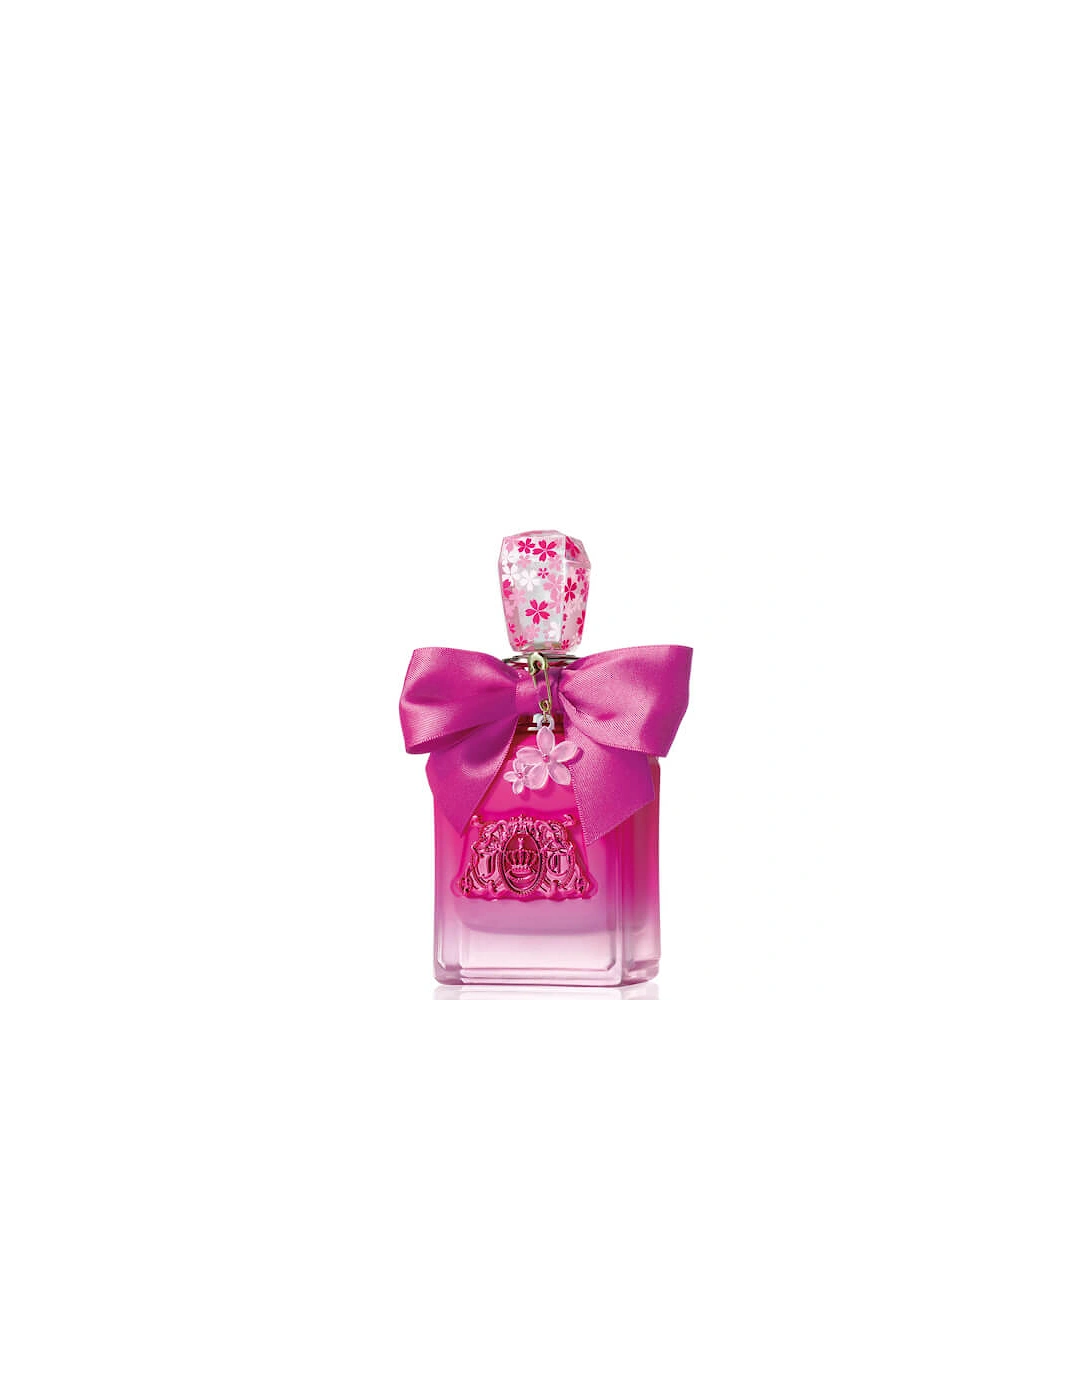 Viva La Juicy Petals Please Eau de Parfum 50ml, 2 of 1